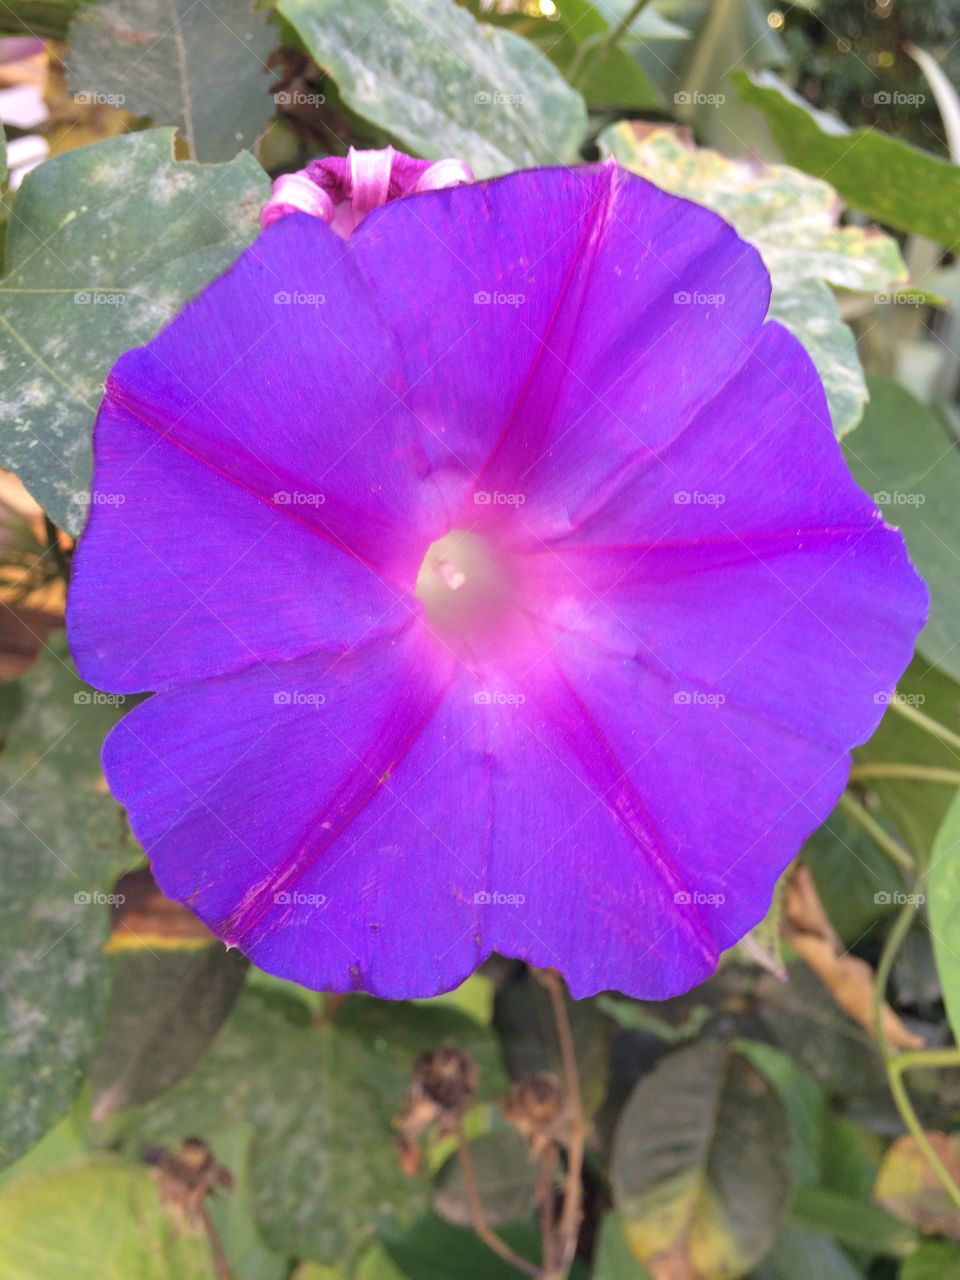 Flower. A majestic purple flower